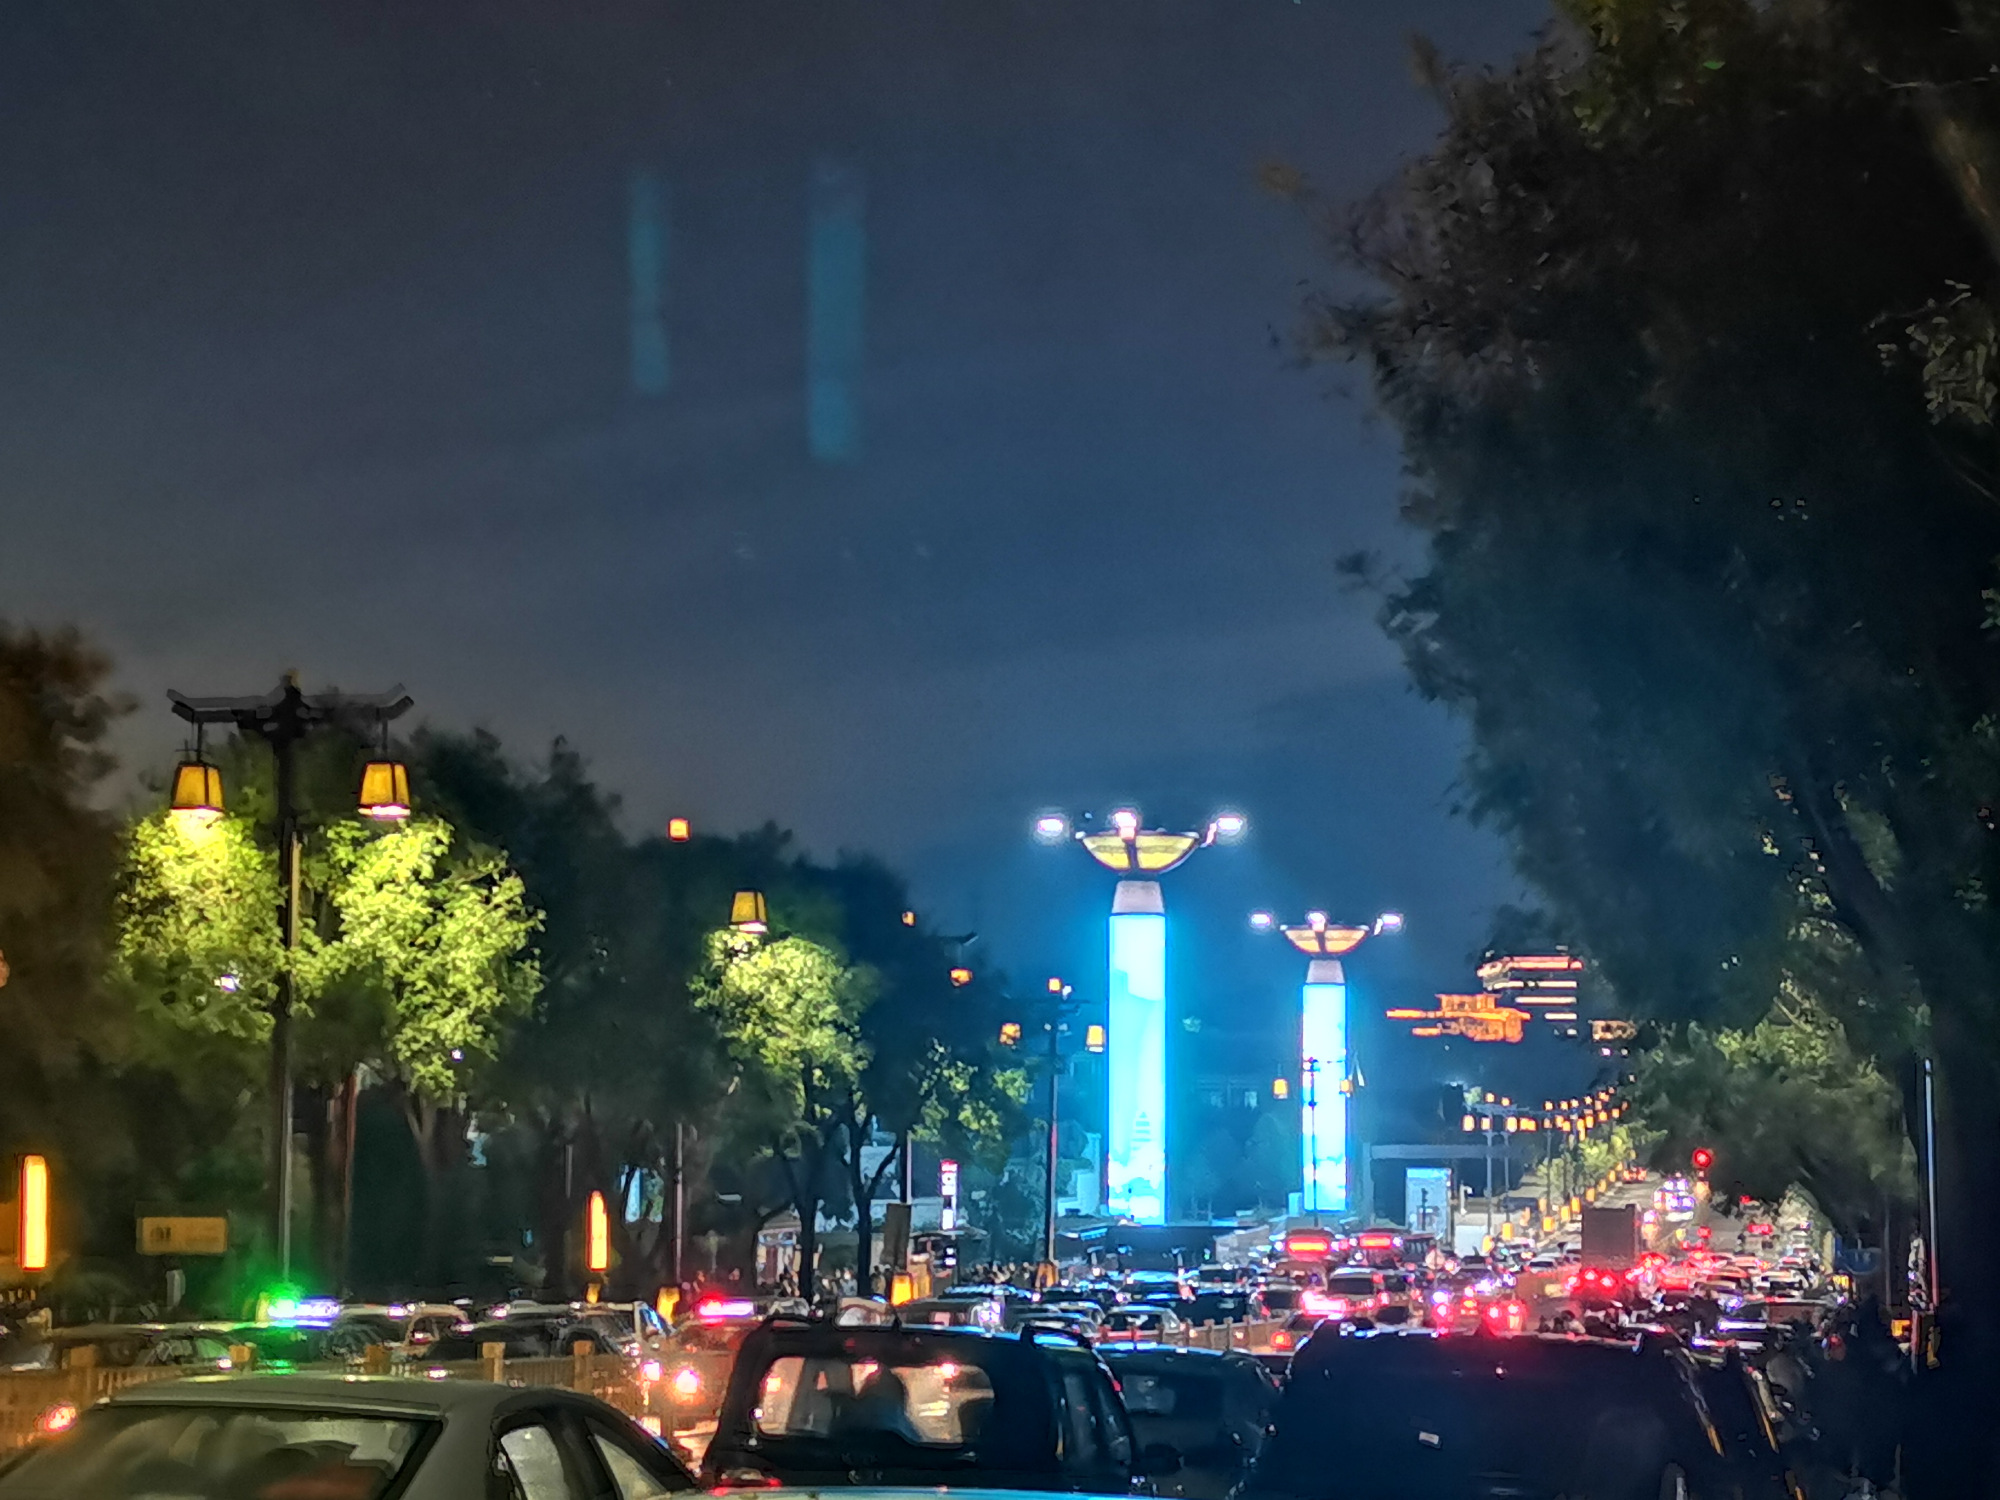 华清池夜景图片